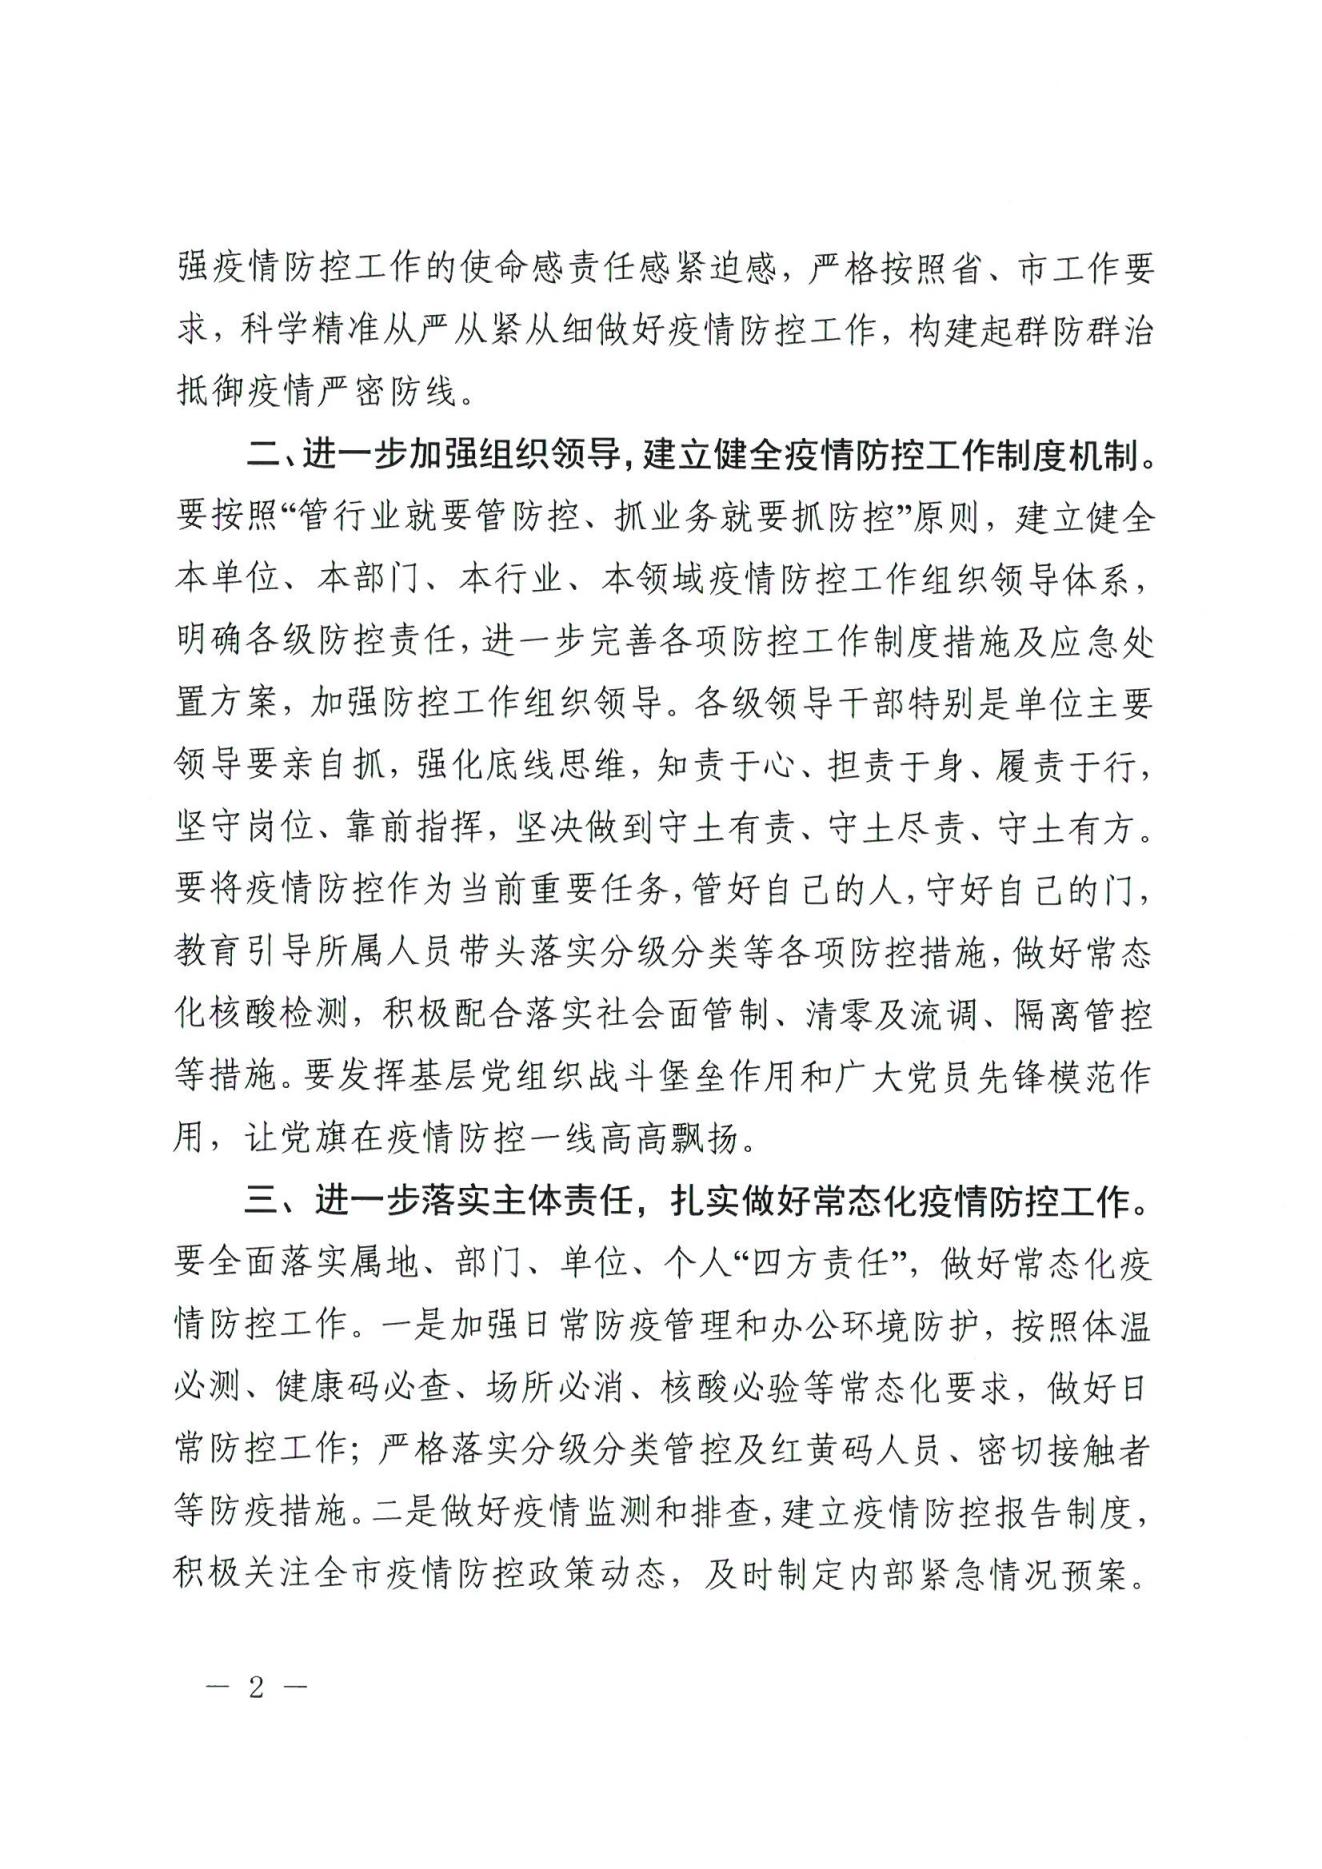 广州市地方金融监督管理局关于进一步做好全市金融行业新冠肺炎疫情防控工作的通知(1)(1)(1)_01.jpg